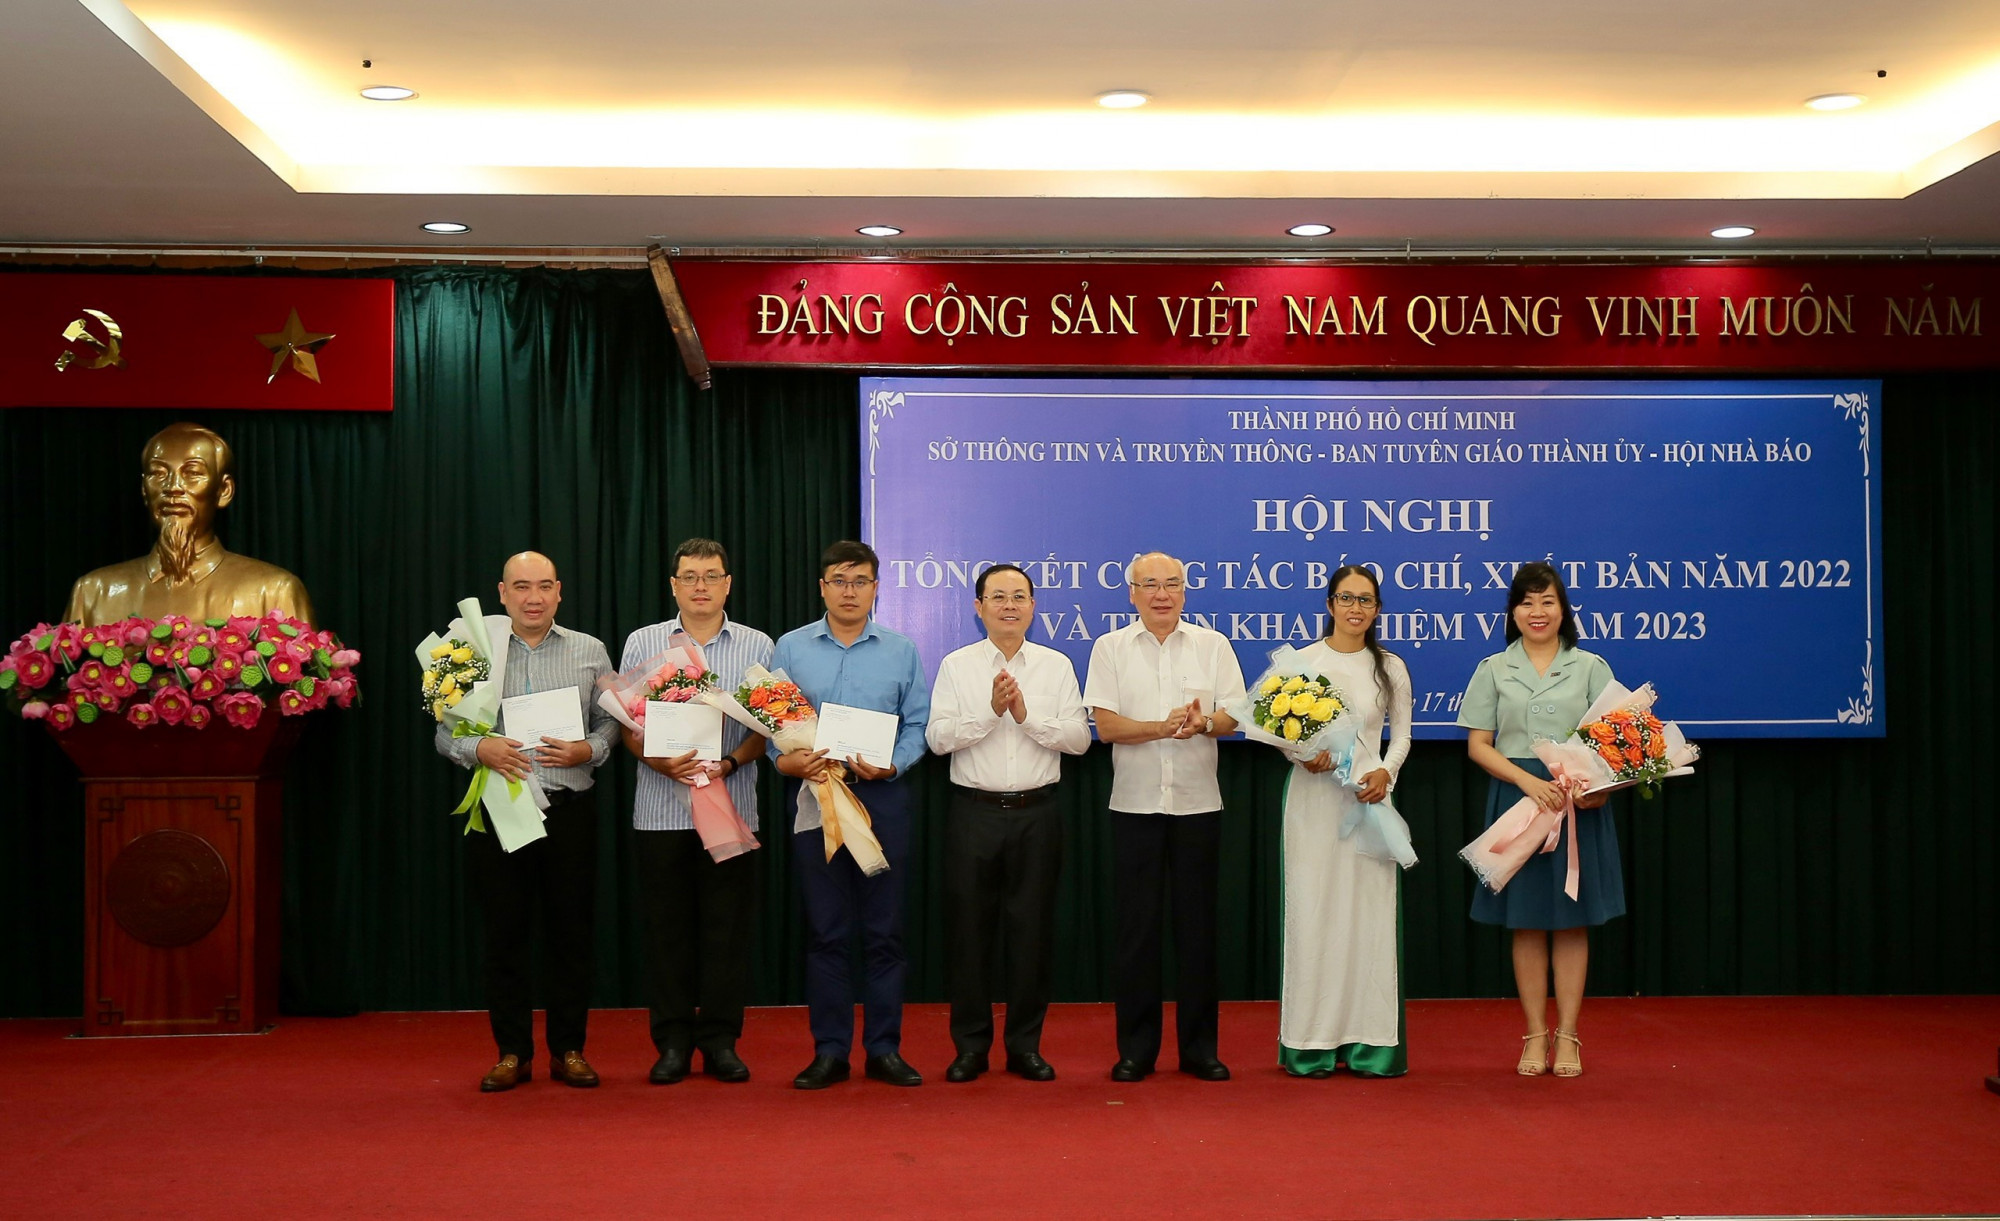 Đại diện các nhóm tác giả đạt giải thưởng Búa liềm vàng năm 2022 được tuyên dương và trao thưởng